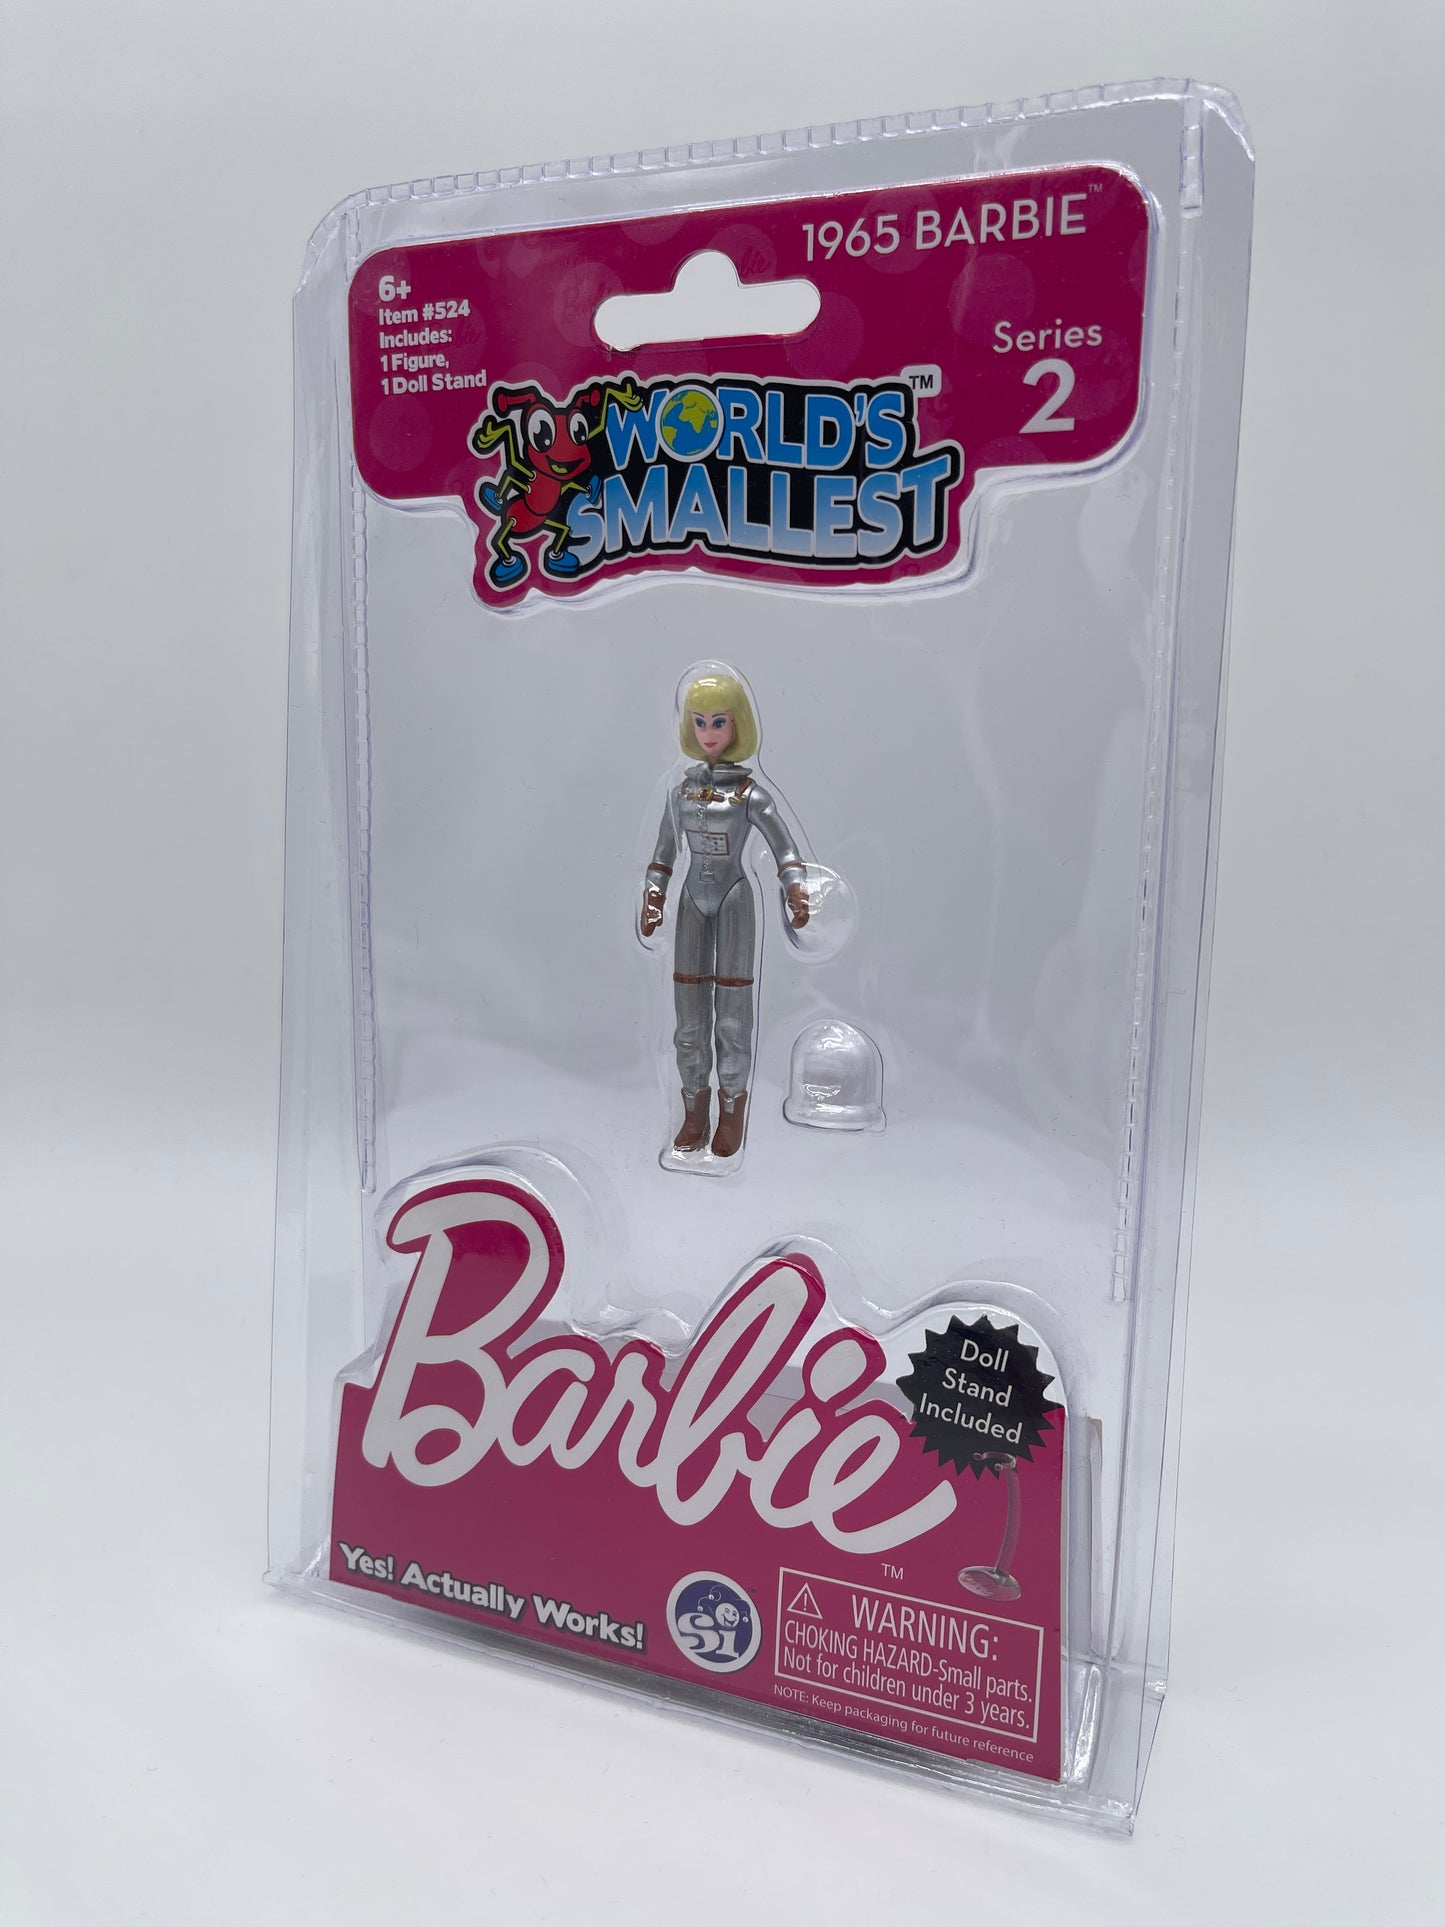 Worlds Smallest - 1965 Barbie Series 2 Mattel + Doll Stand 2019